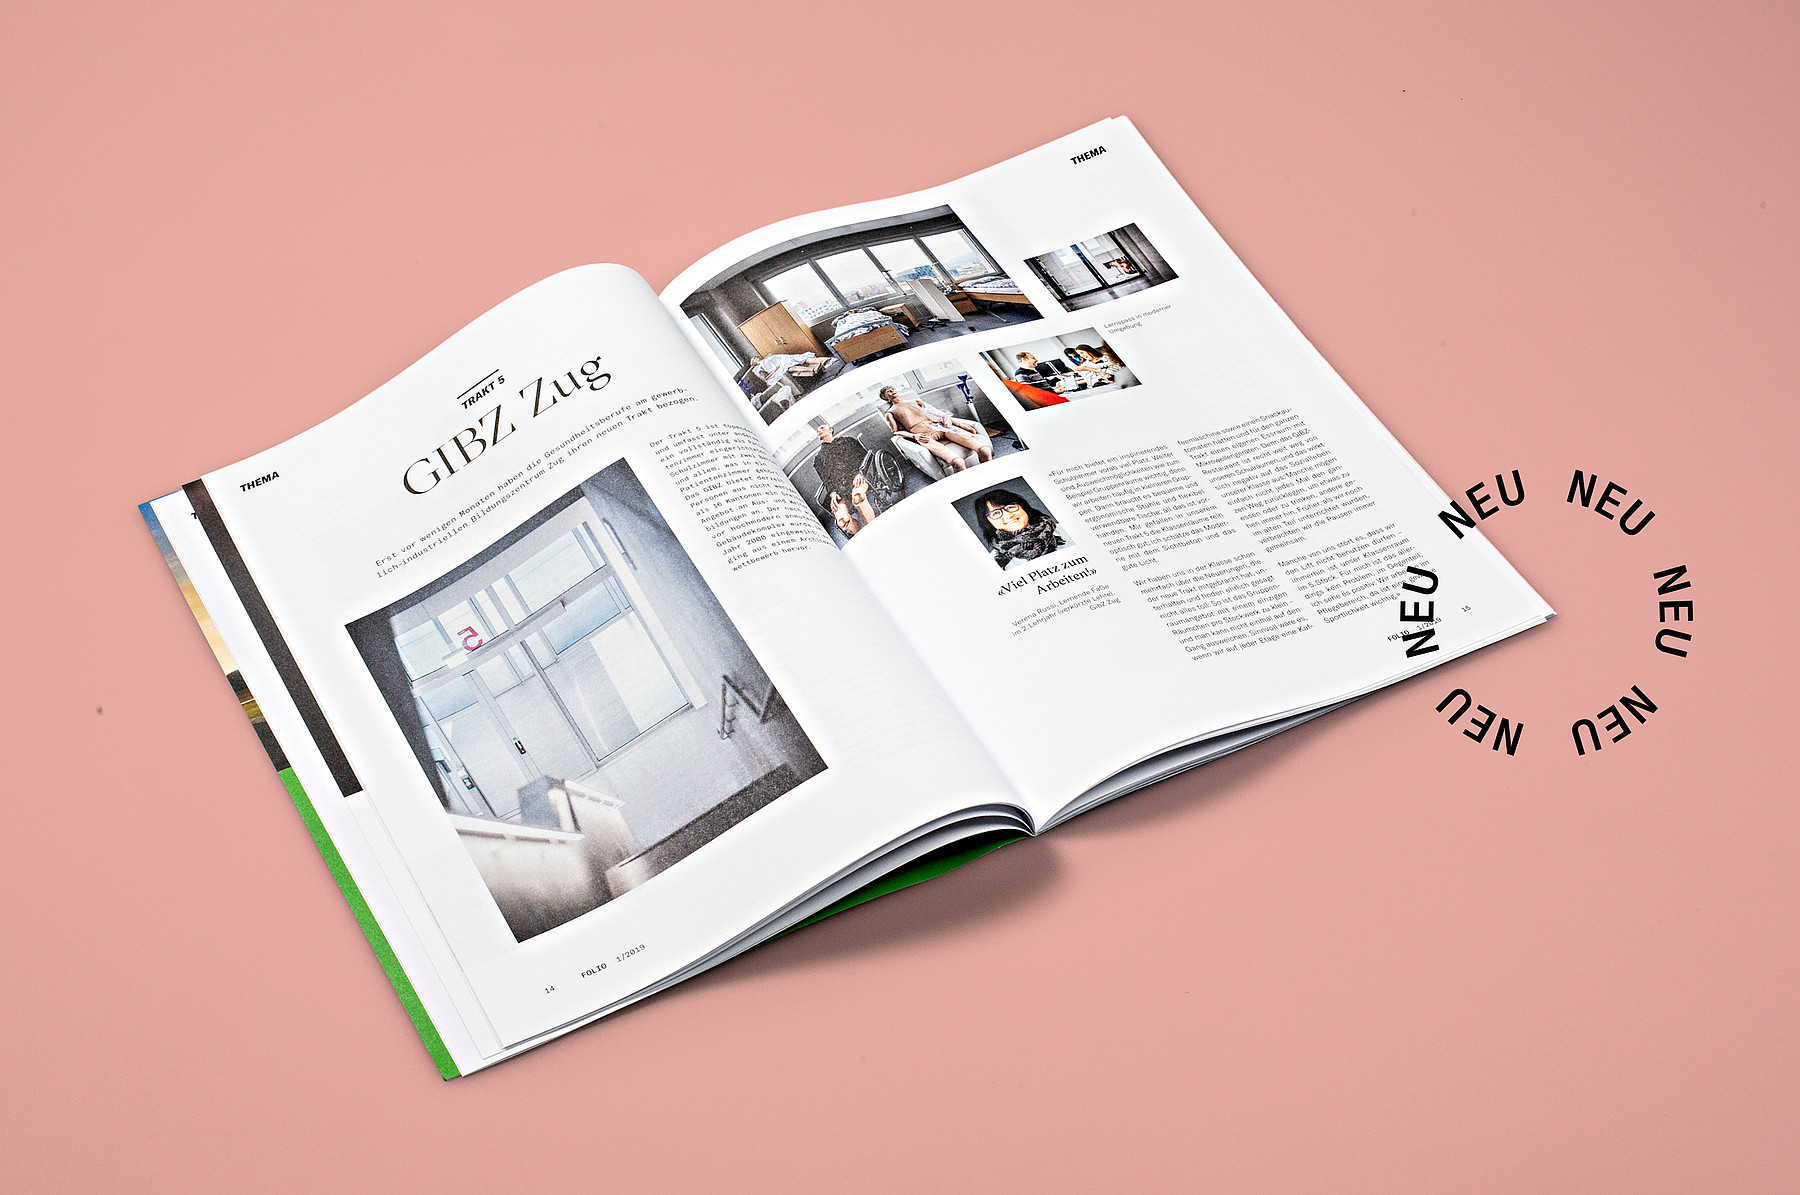 Ein Blick in das neu gestaltete Magazin «Folio» des Verbands Berufsbildung Schweiz zeigt einen Artikel über das GIBZ Zug.